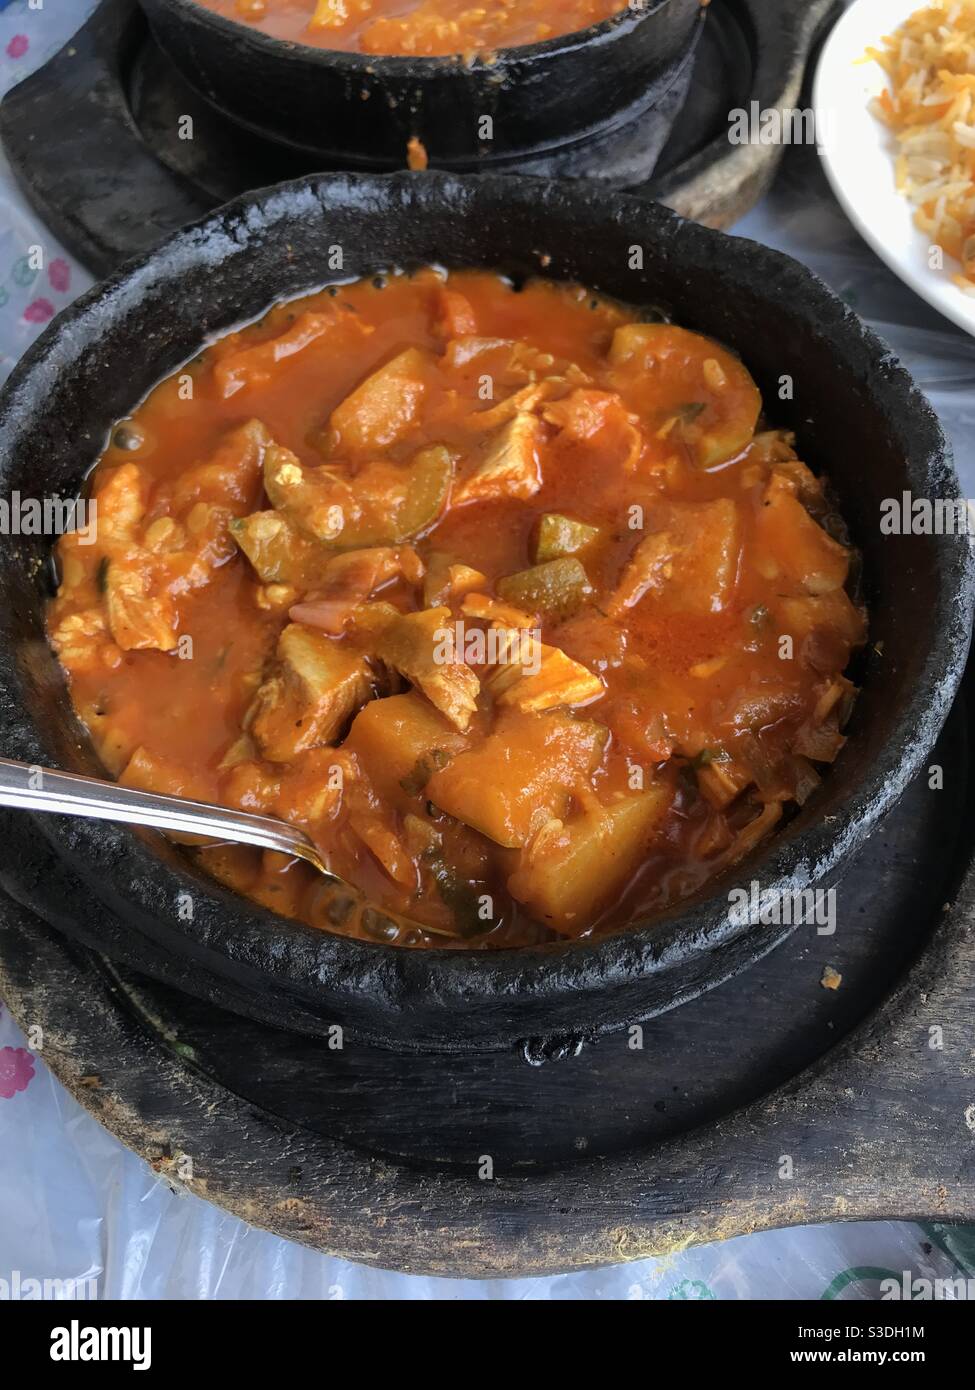 Nahaufnahme eines frisch zubereiteten Hühnerogdat-Gerichts Eintopf in einem jemenitischen Restaurant Stockfoto